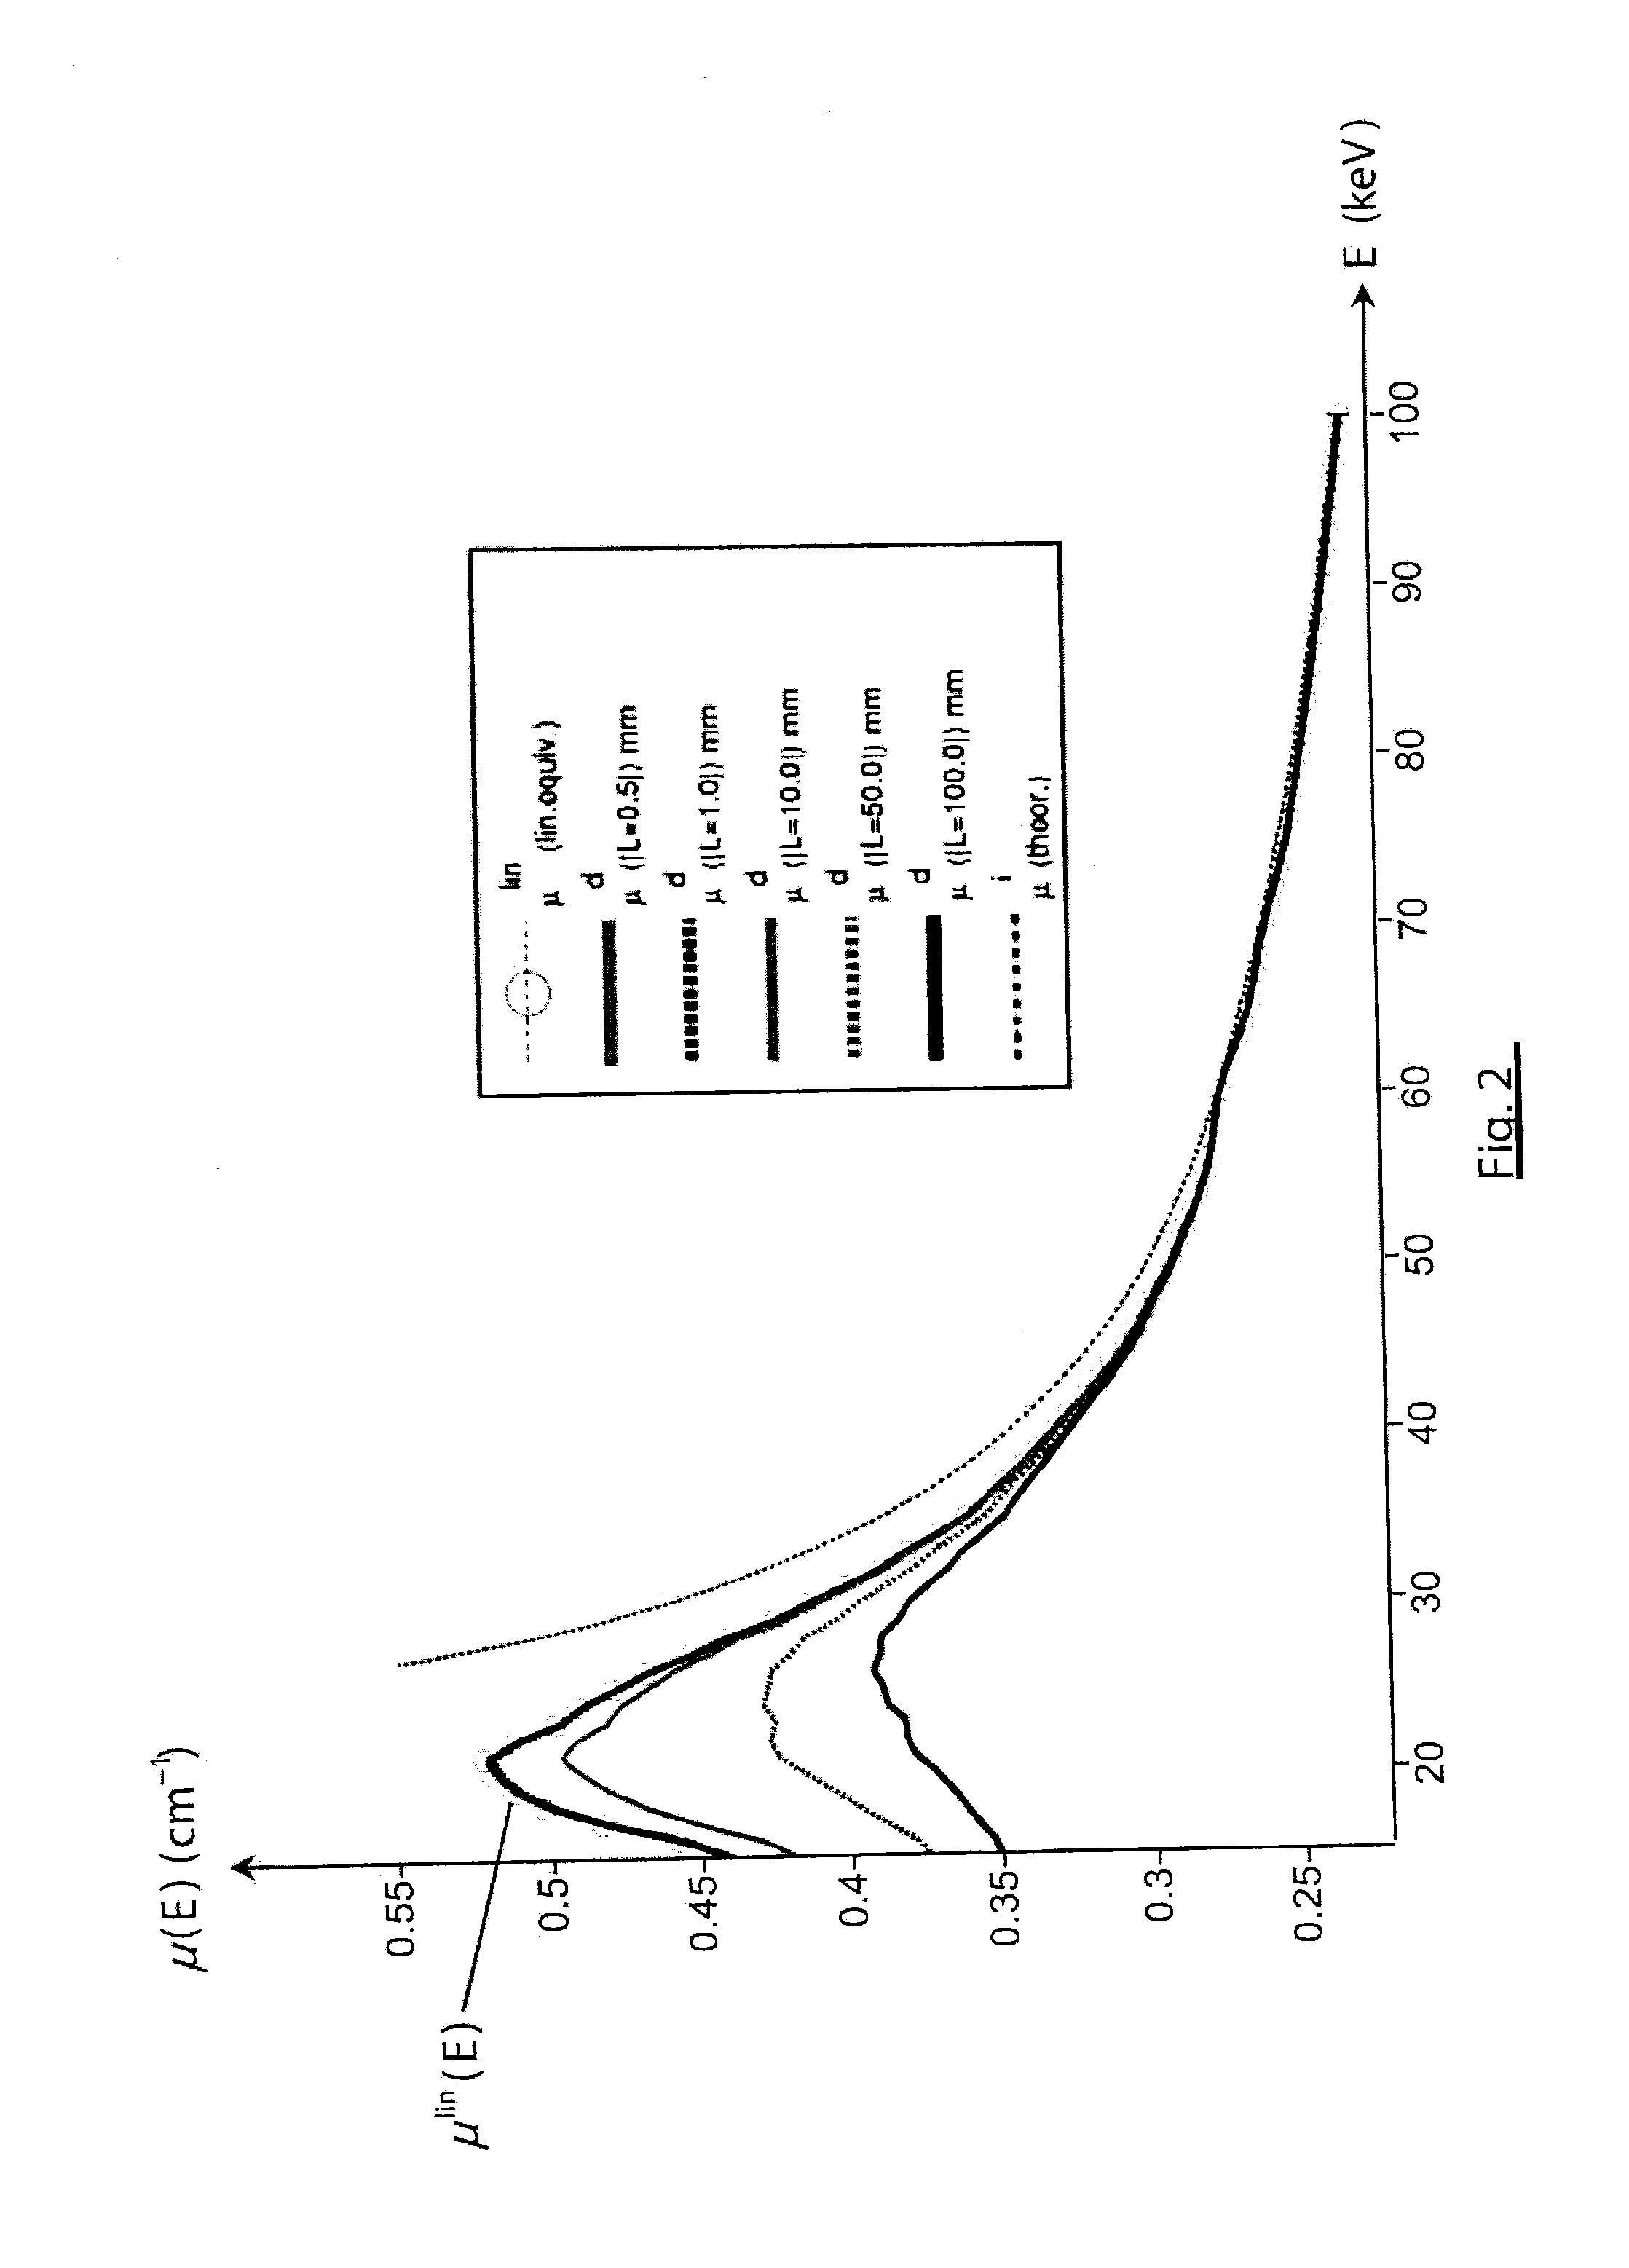 Method for linearizing attenuation measurements taken by a spectrometry sensor